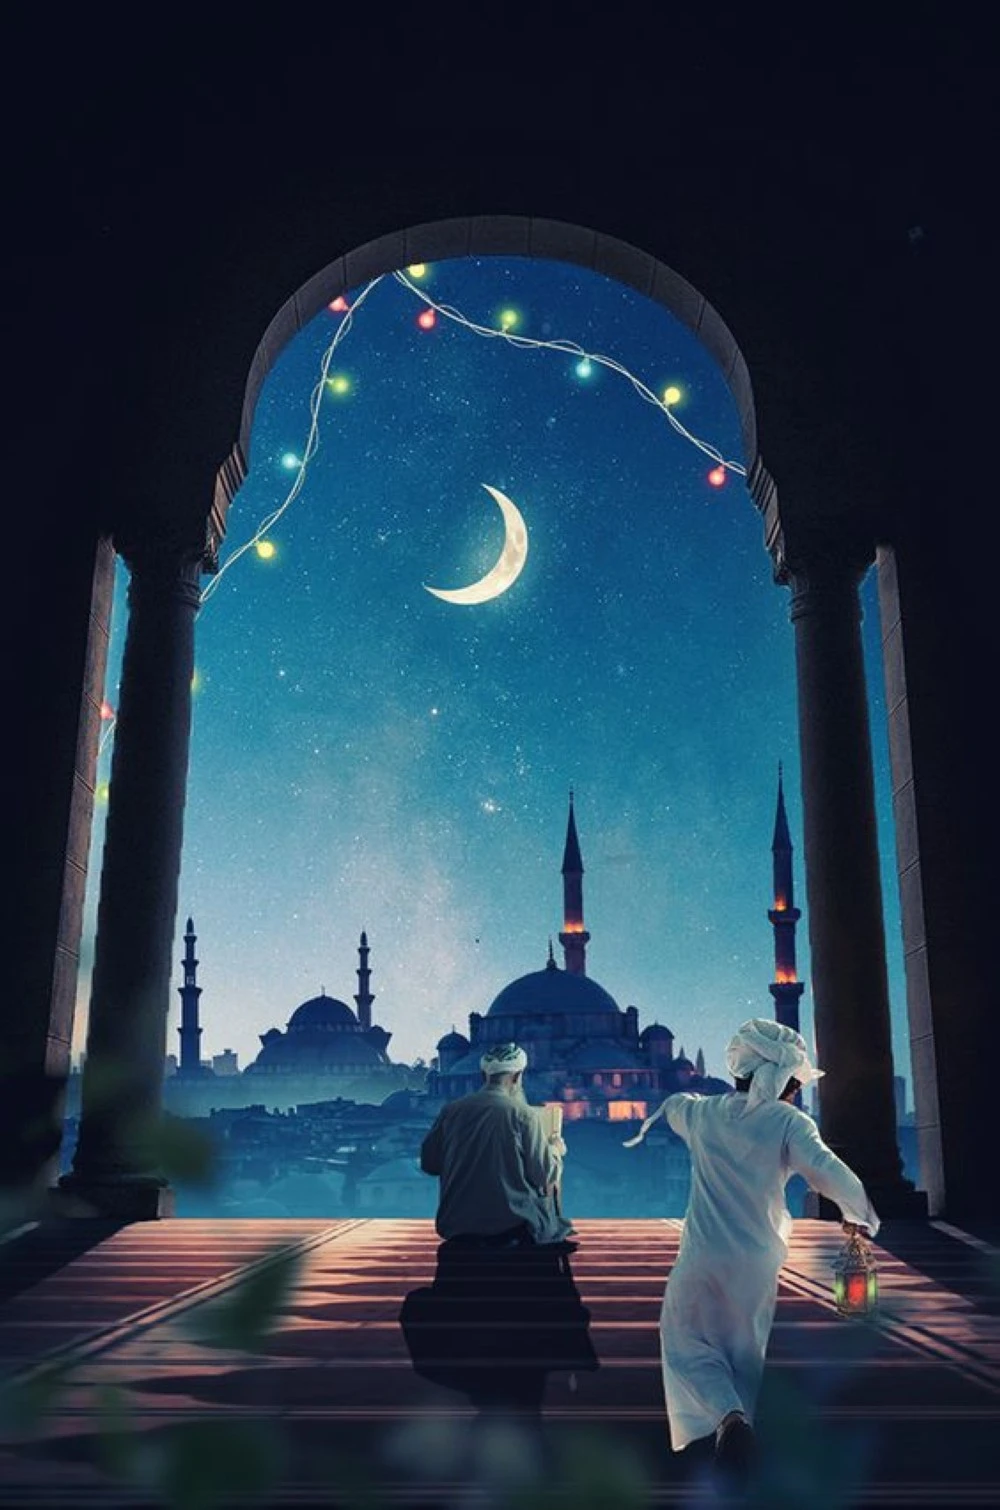 صور خلفيات رمضان 